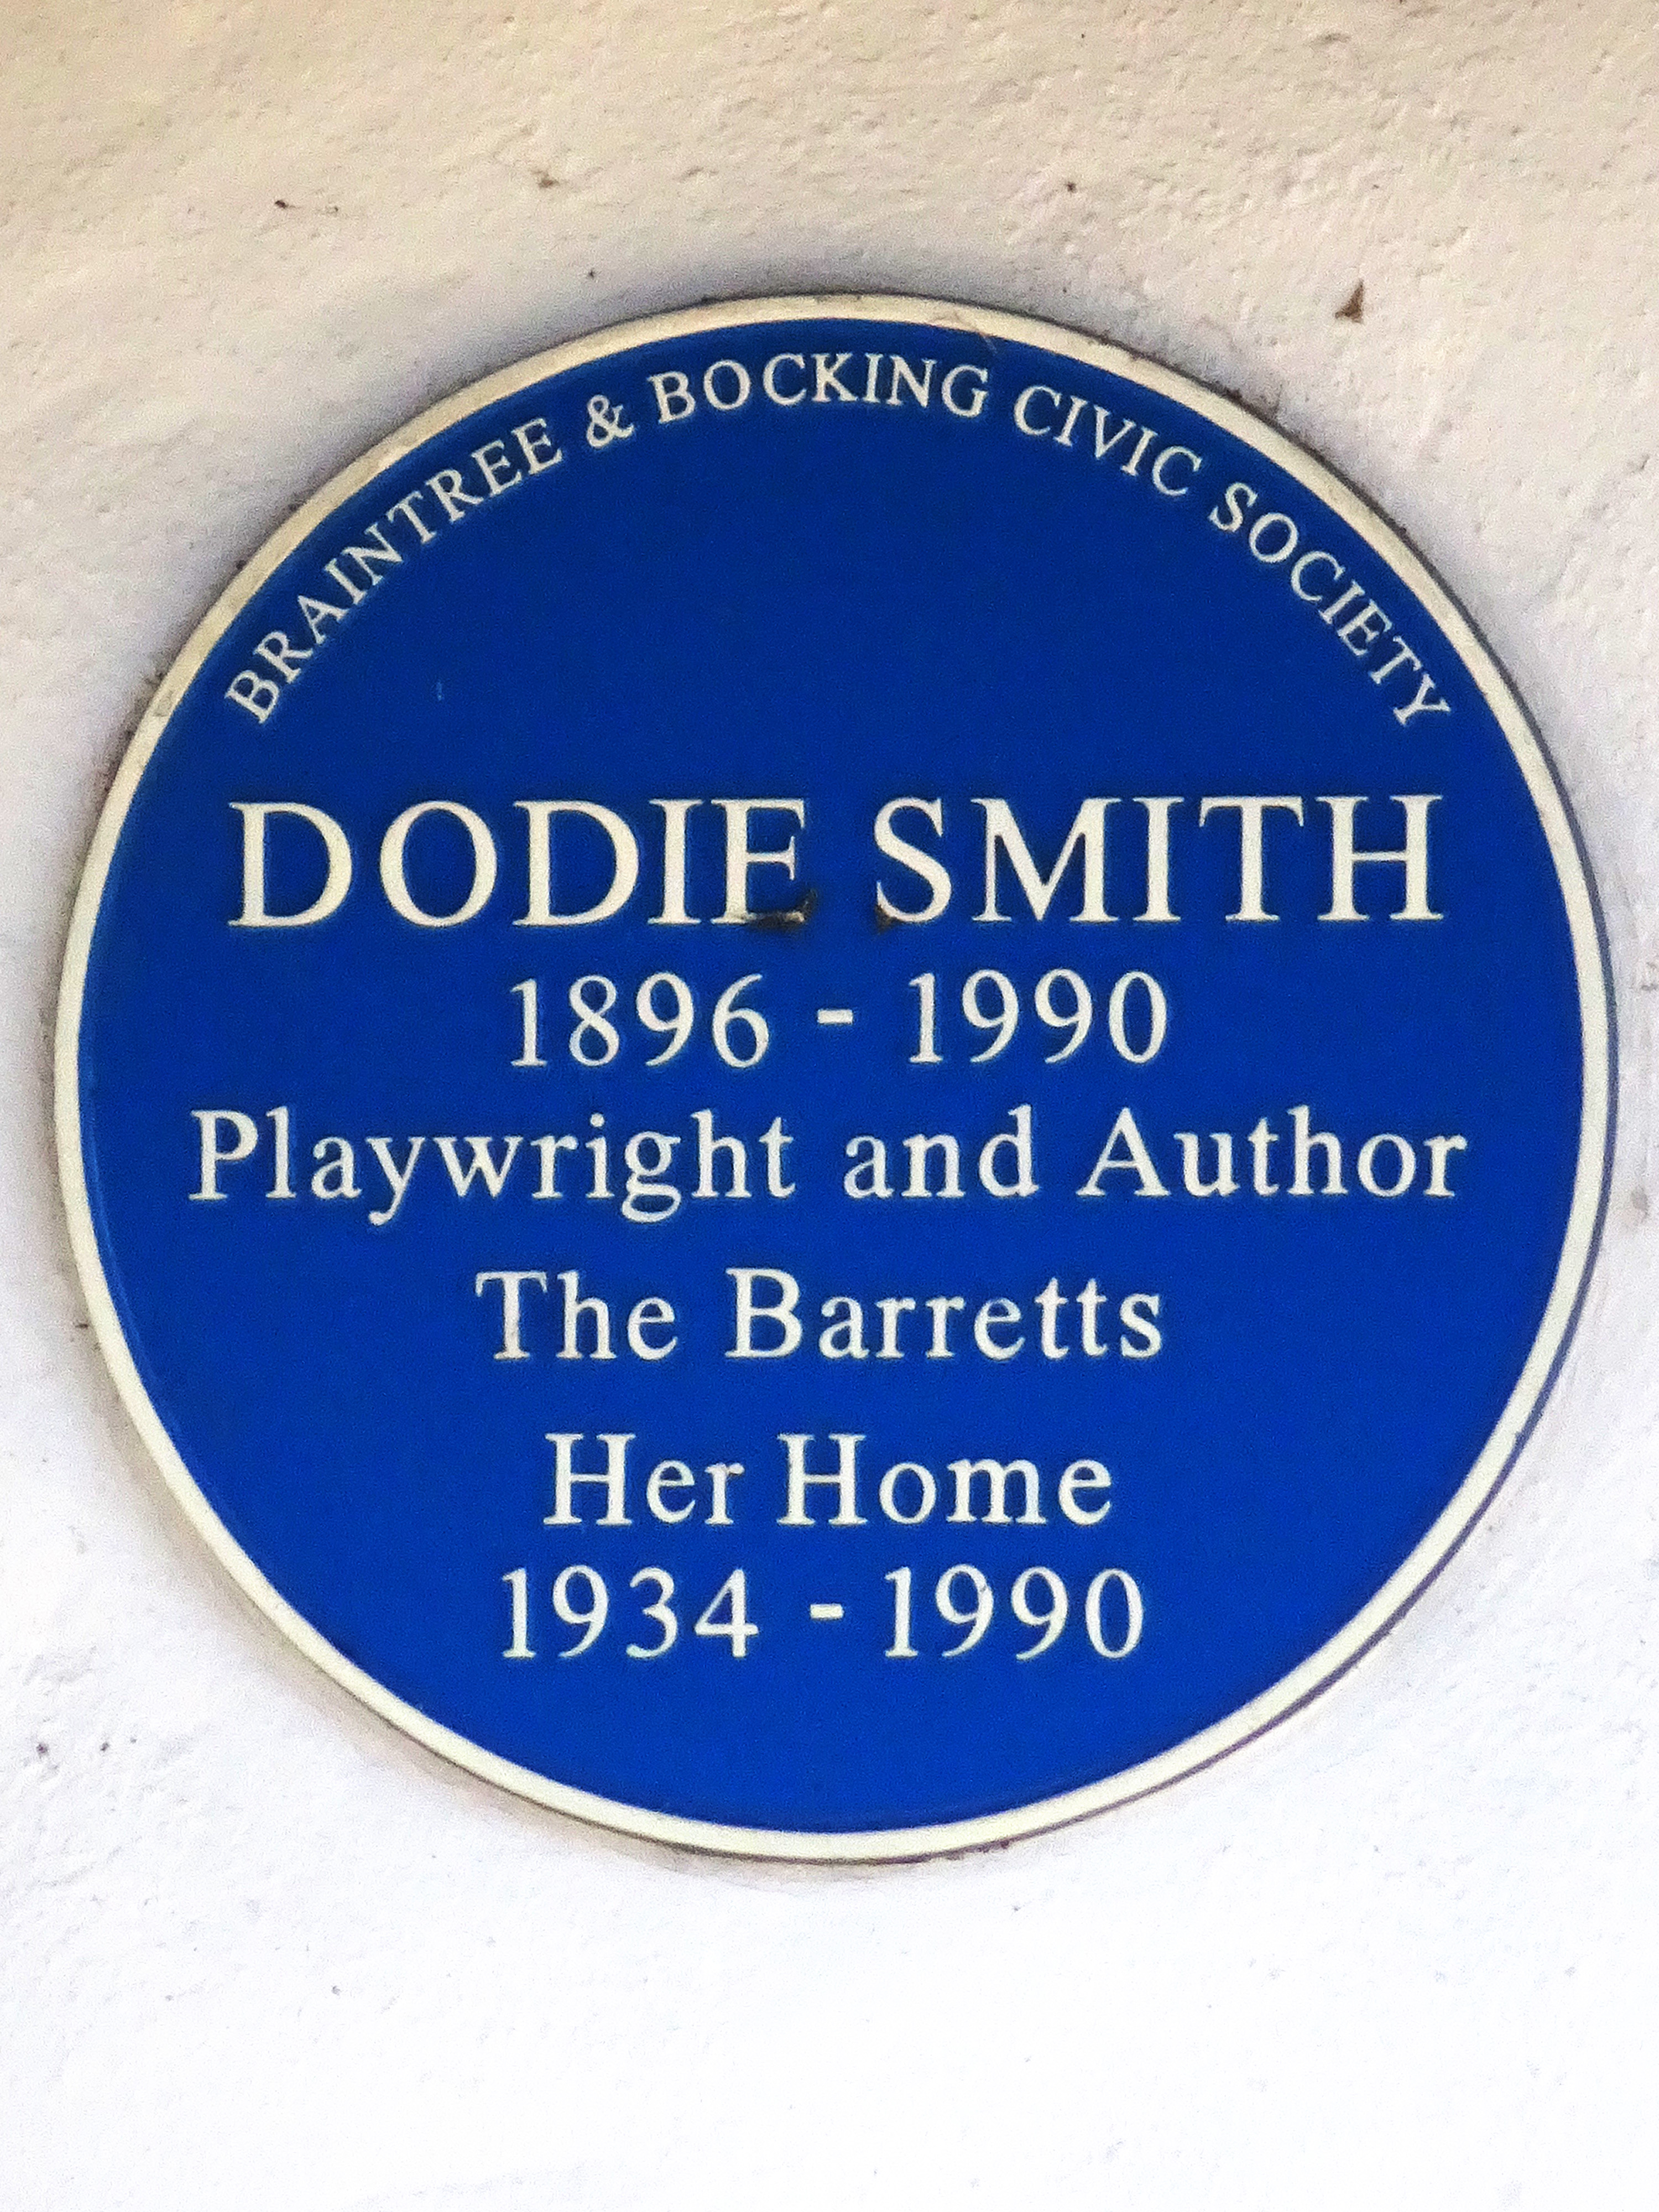 Dodie Smith - Wikipedia